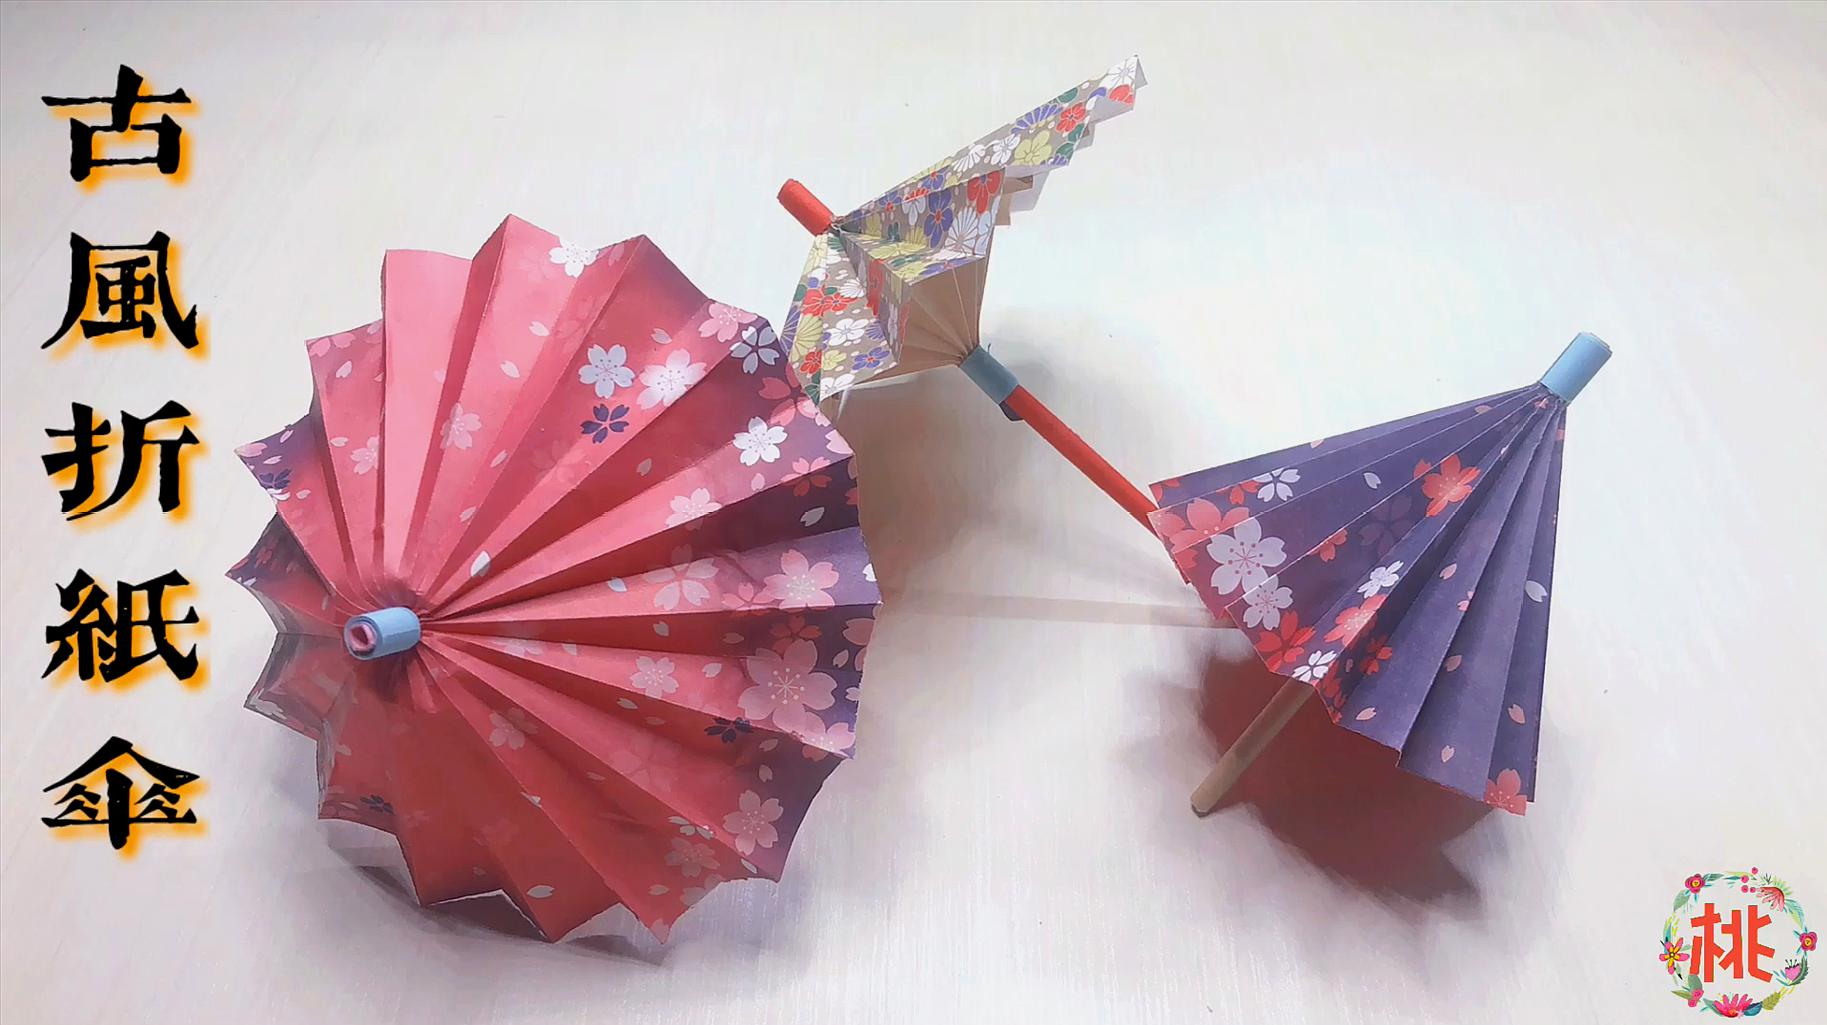 来源:好看视频-手工小雨伞的折法,简单又漂亮的雨伞折纸教程 3古风